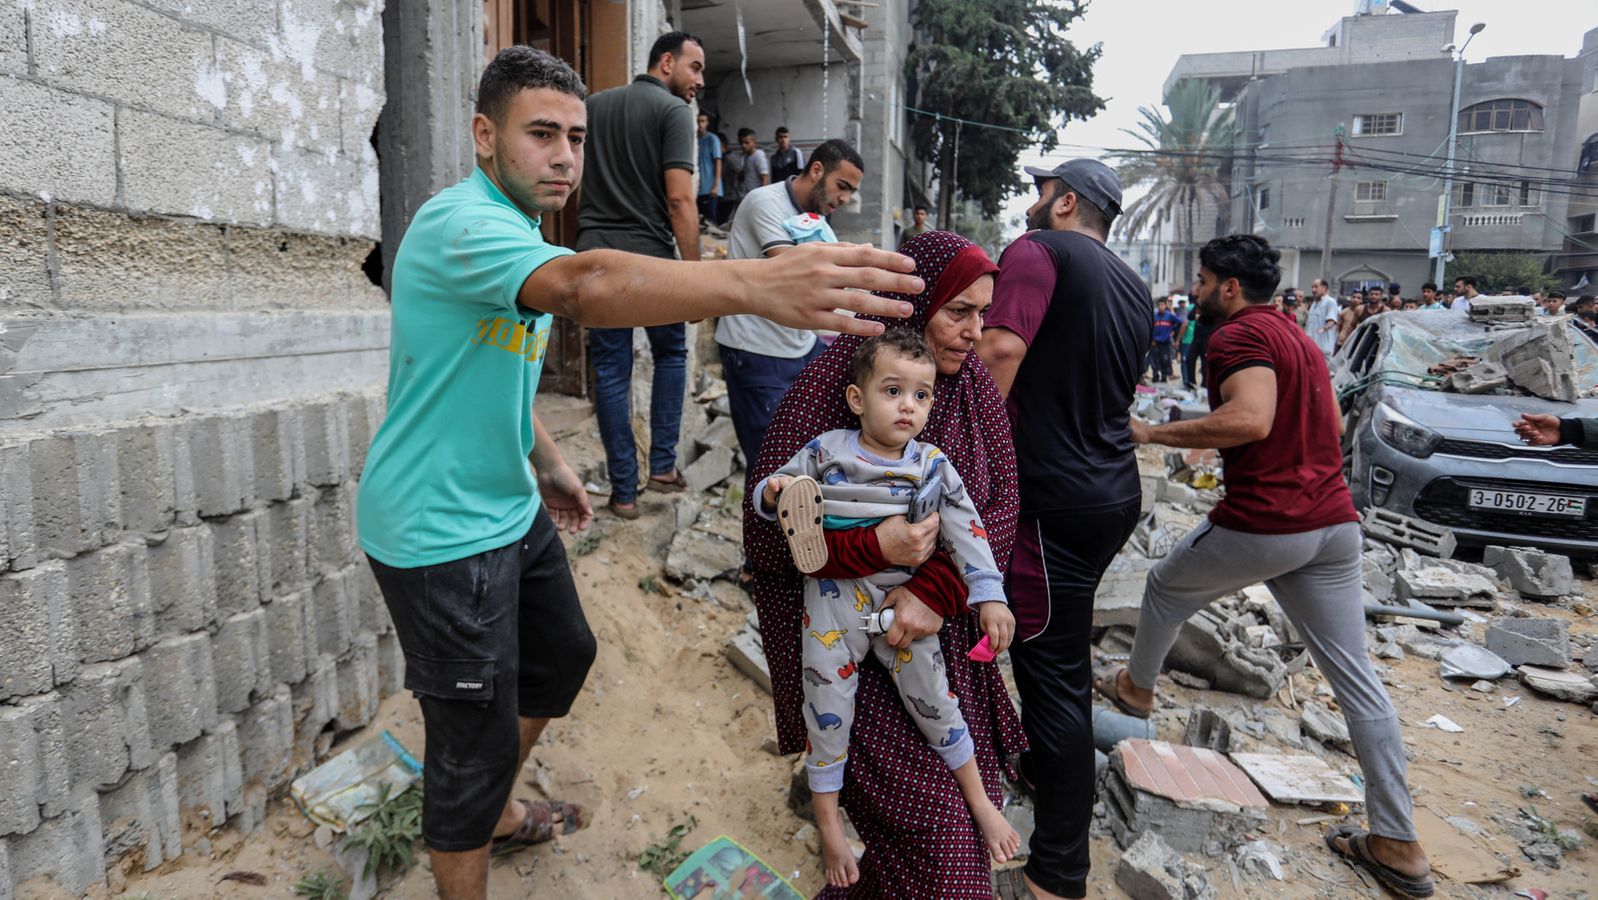 Saqueos en la Franja de Gaza: la situación humanitaria está empeorando